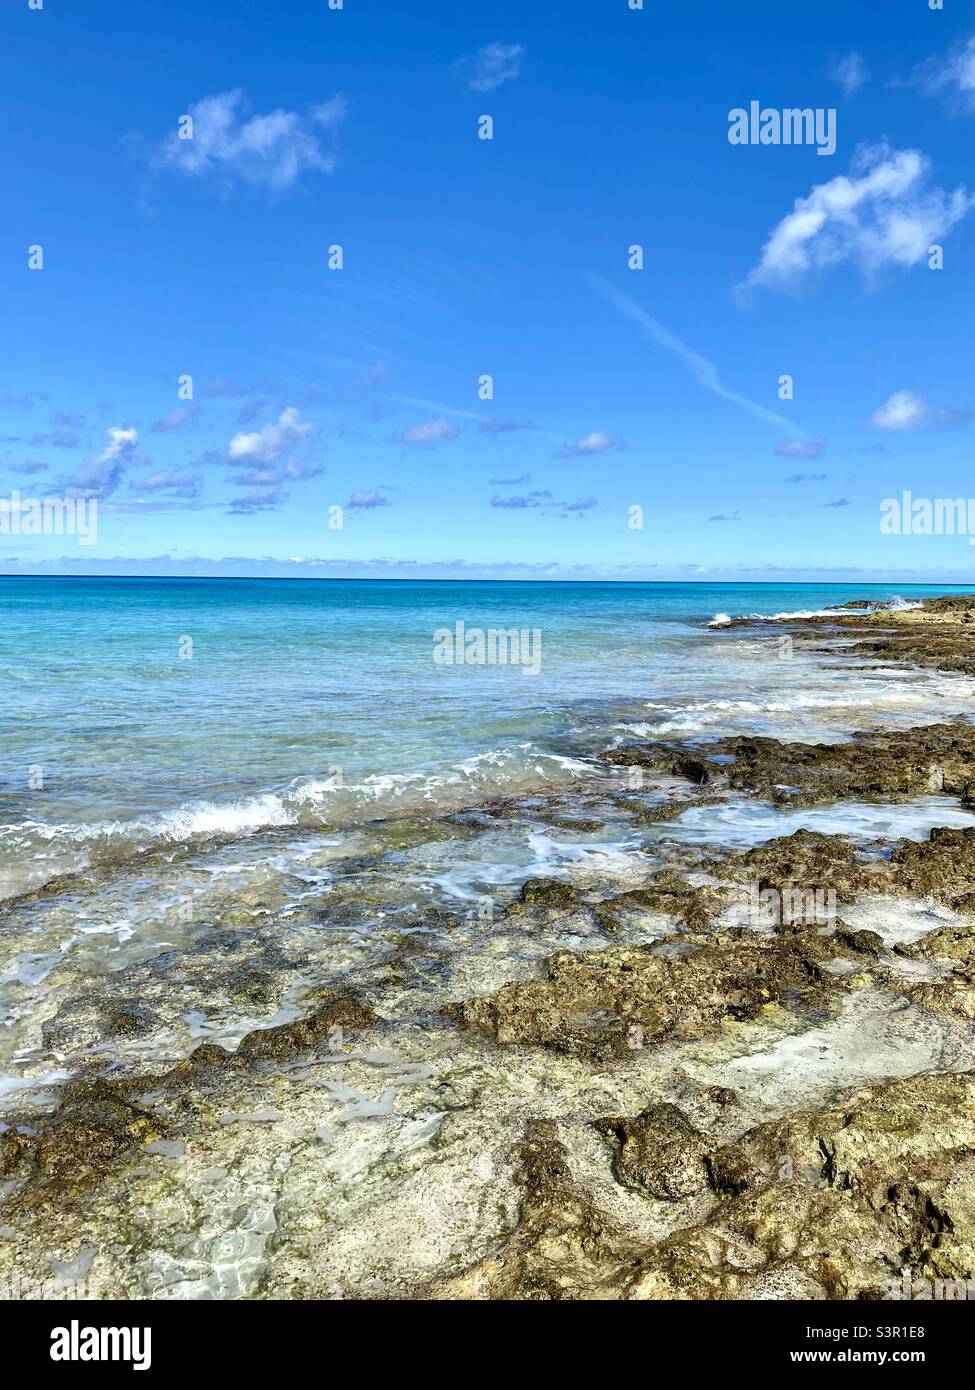 Blue ocean water, beach in Bimini, Bahamas Stock Photo